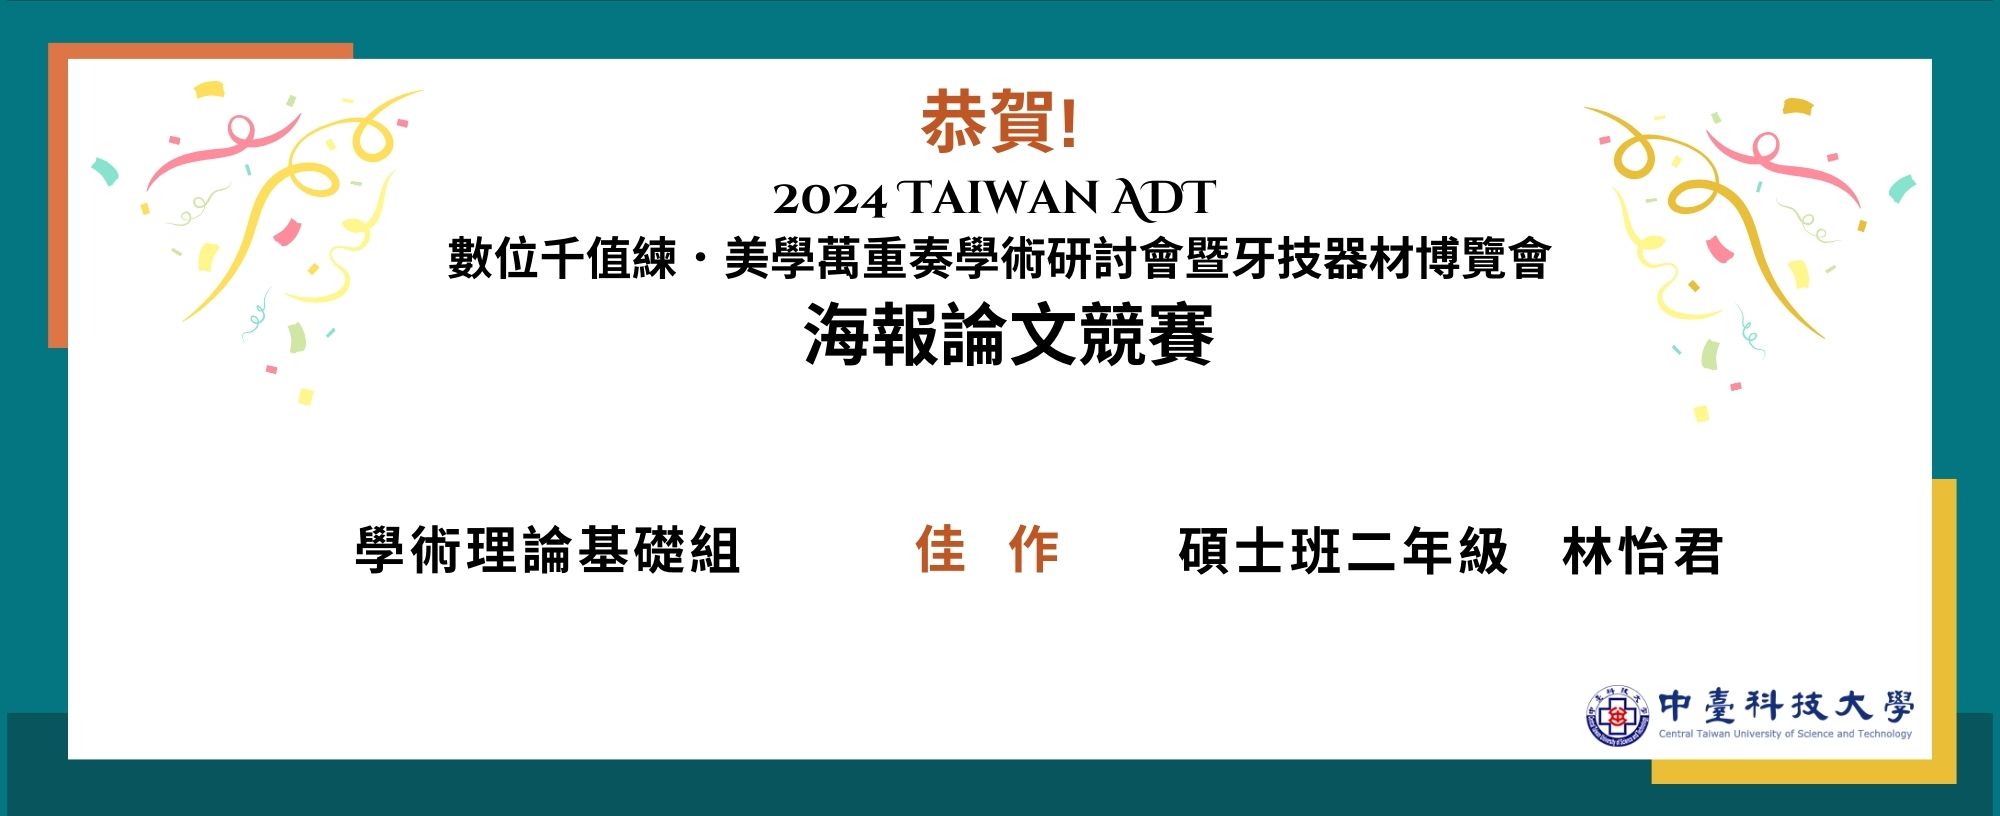 2024 Taiwan ADT  數位千值練．美學萬重奏學術研討會 暨牙技器材博覽會 海報論文競賽